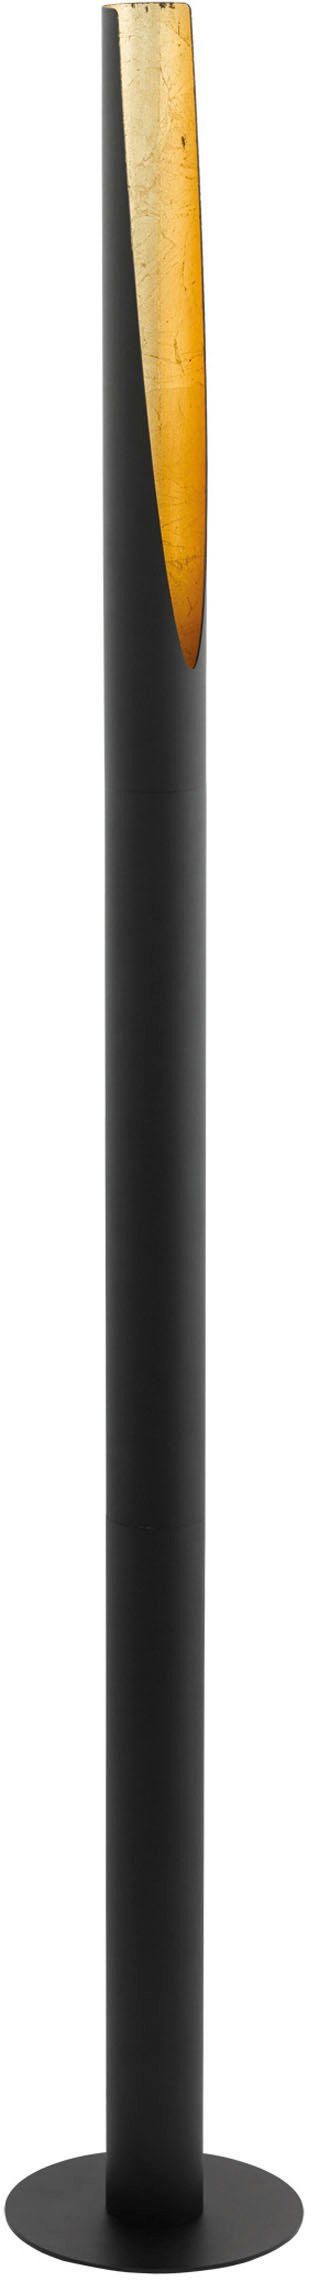 EGLO LED Stehlampe BARBOTTO, LED wechselbar, Warmweiß, schwarz, gold / Ø6 x H137 cm / inkl. 1 x GU10 (je 4,5W) / warmweiß